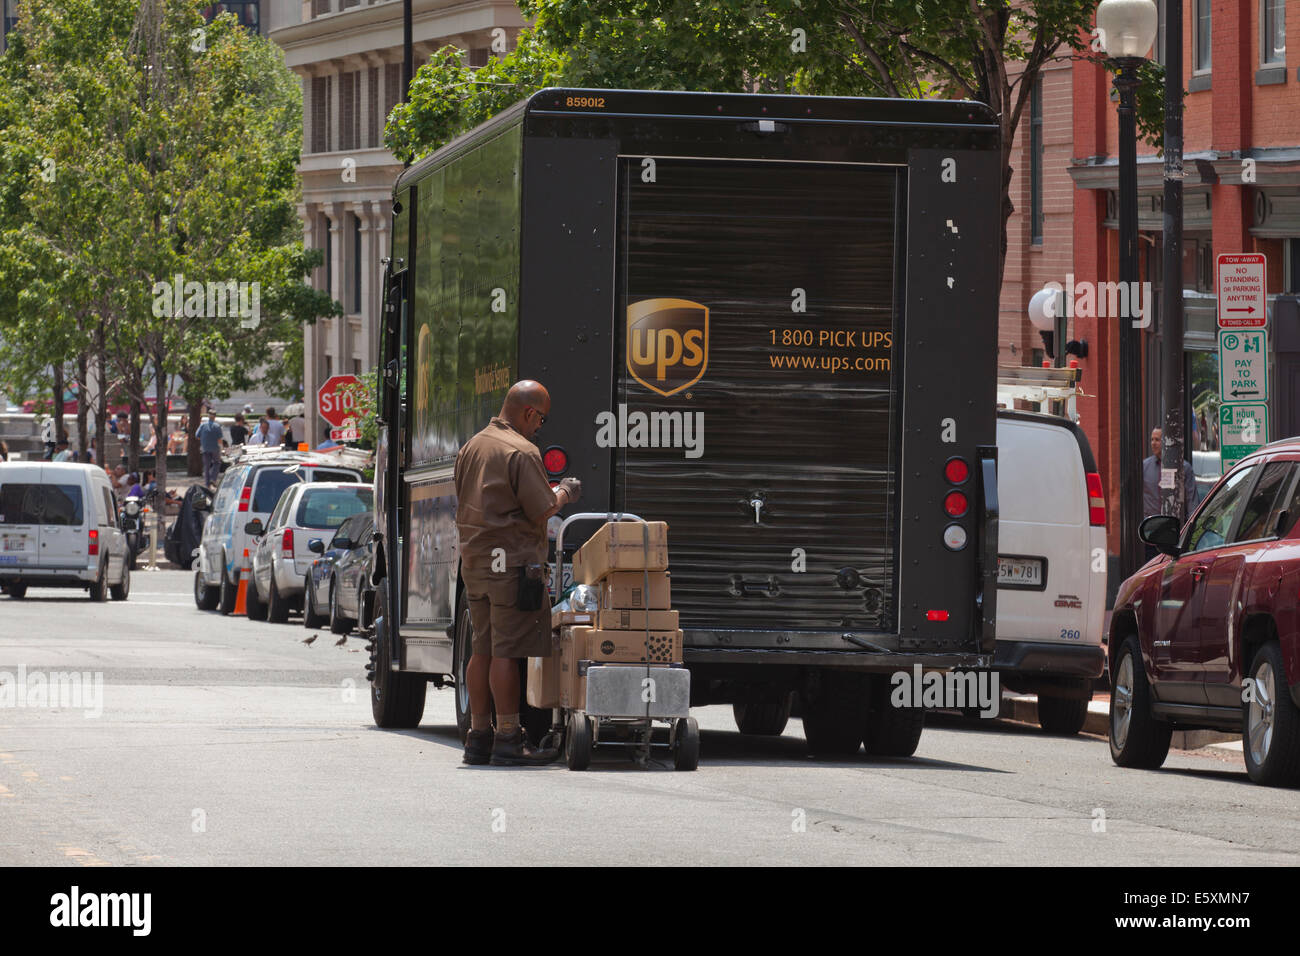 Livraison UPS man prépare à livrer des colis - Washington, DC USA Banque D'Images